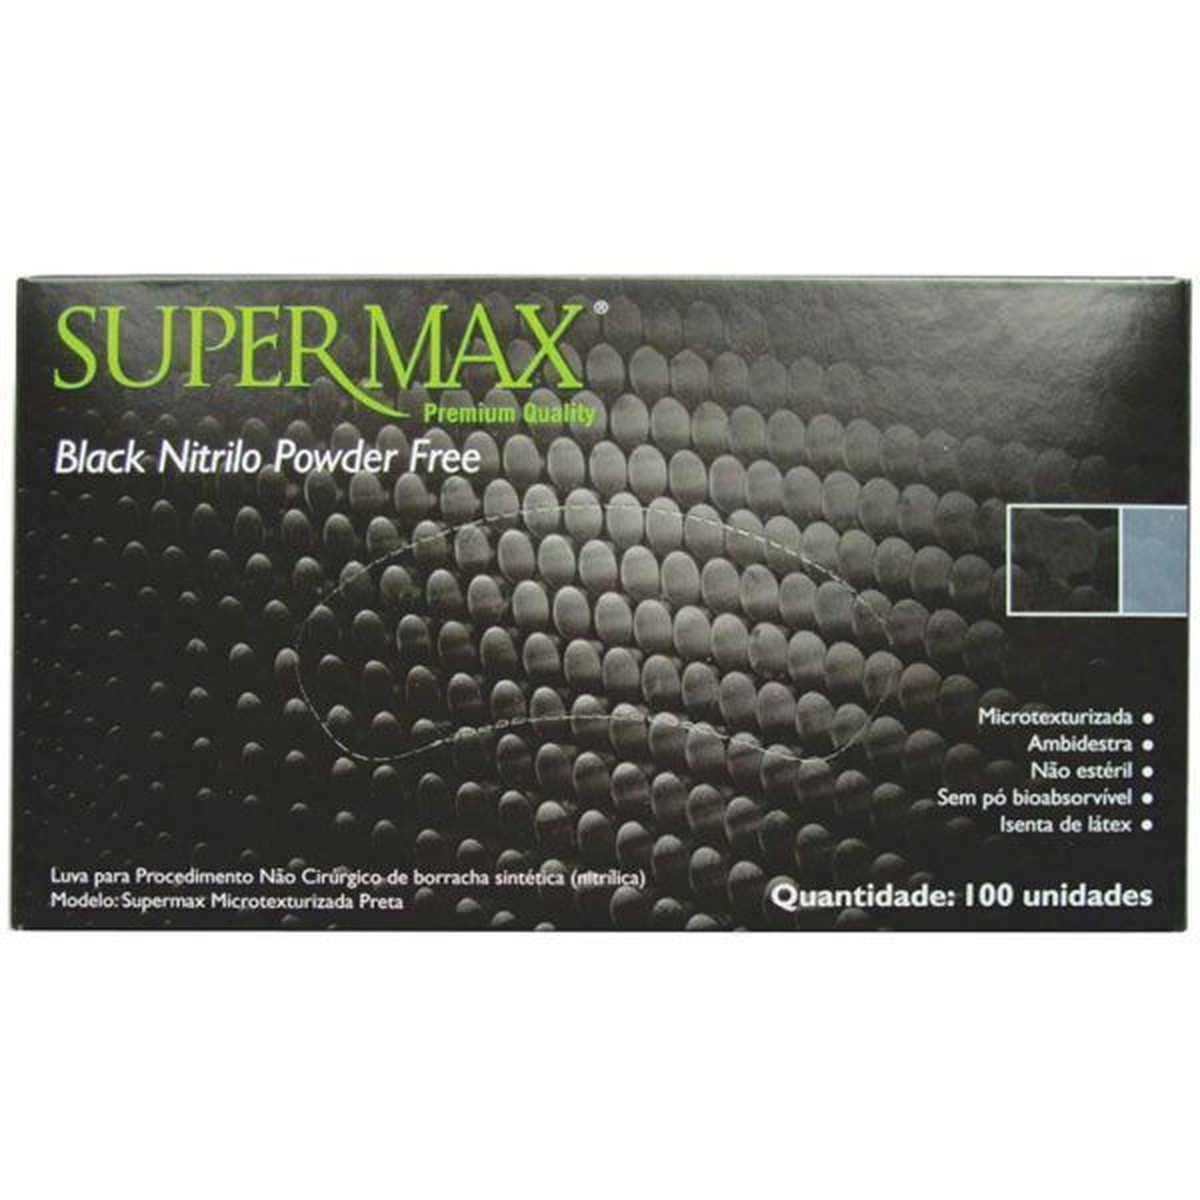 Foto do produto Luva De Procedimento Não Cirúrgico Nitrilo Black - Sem Pó Supermax